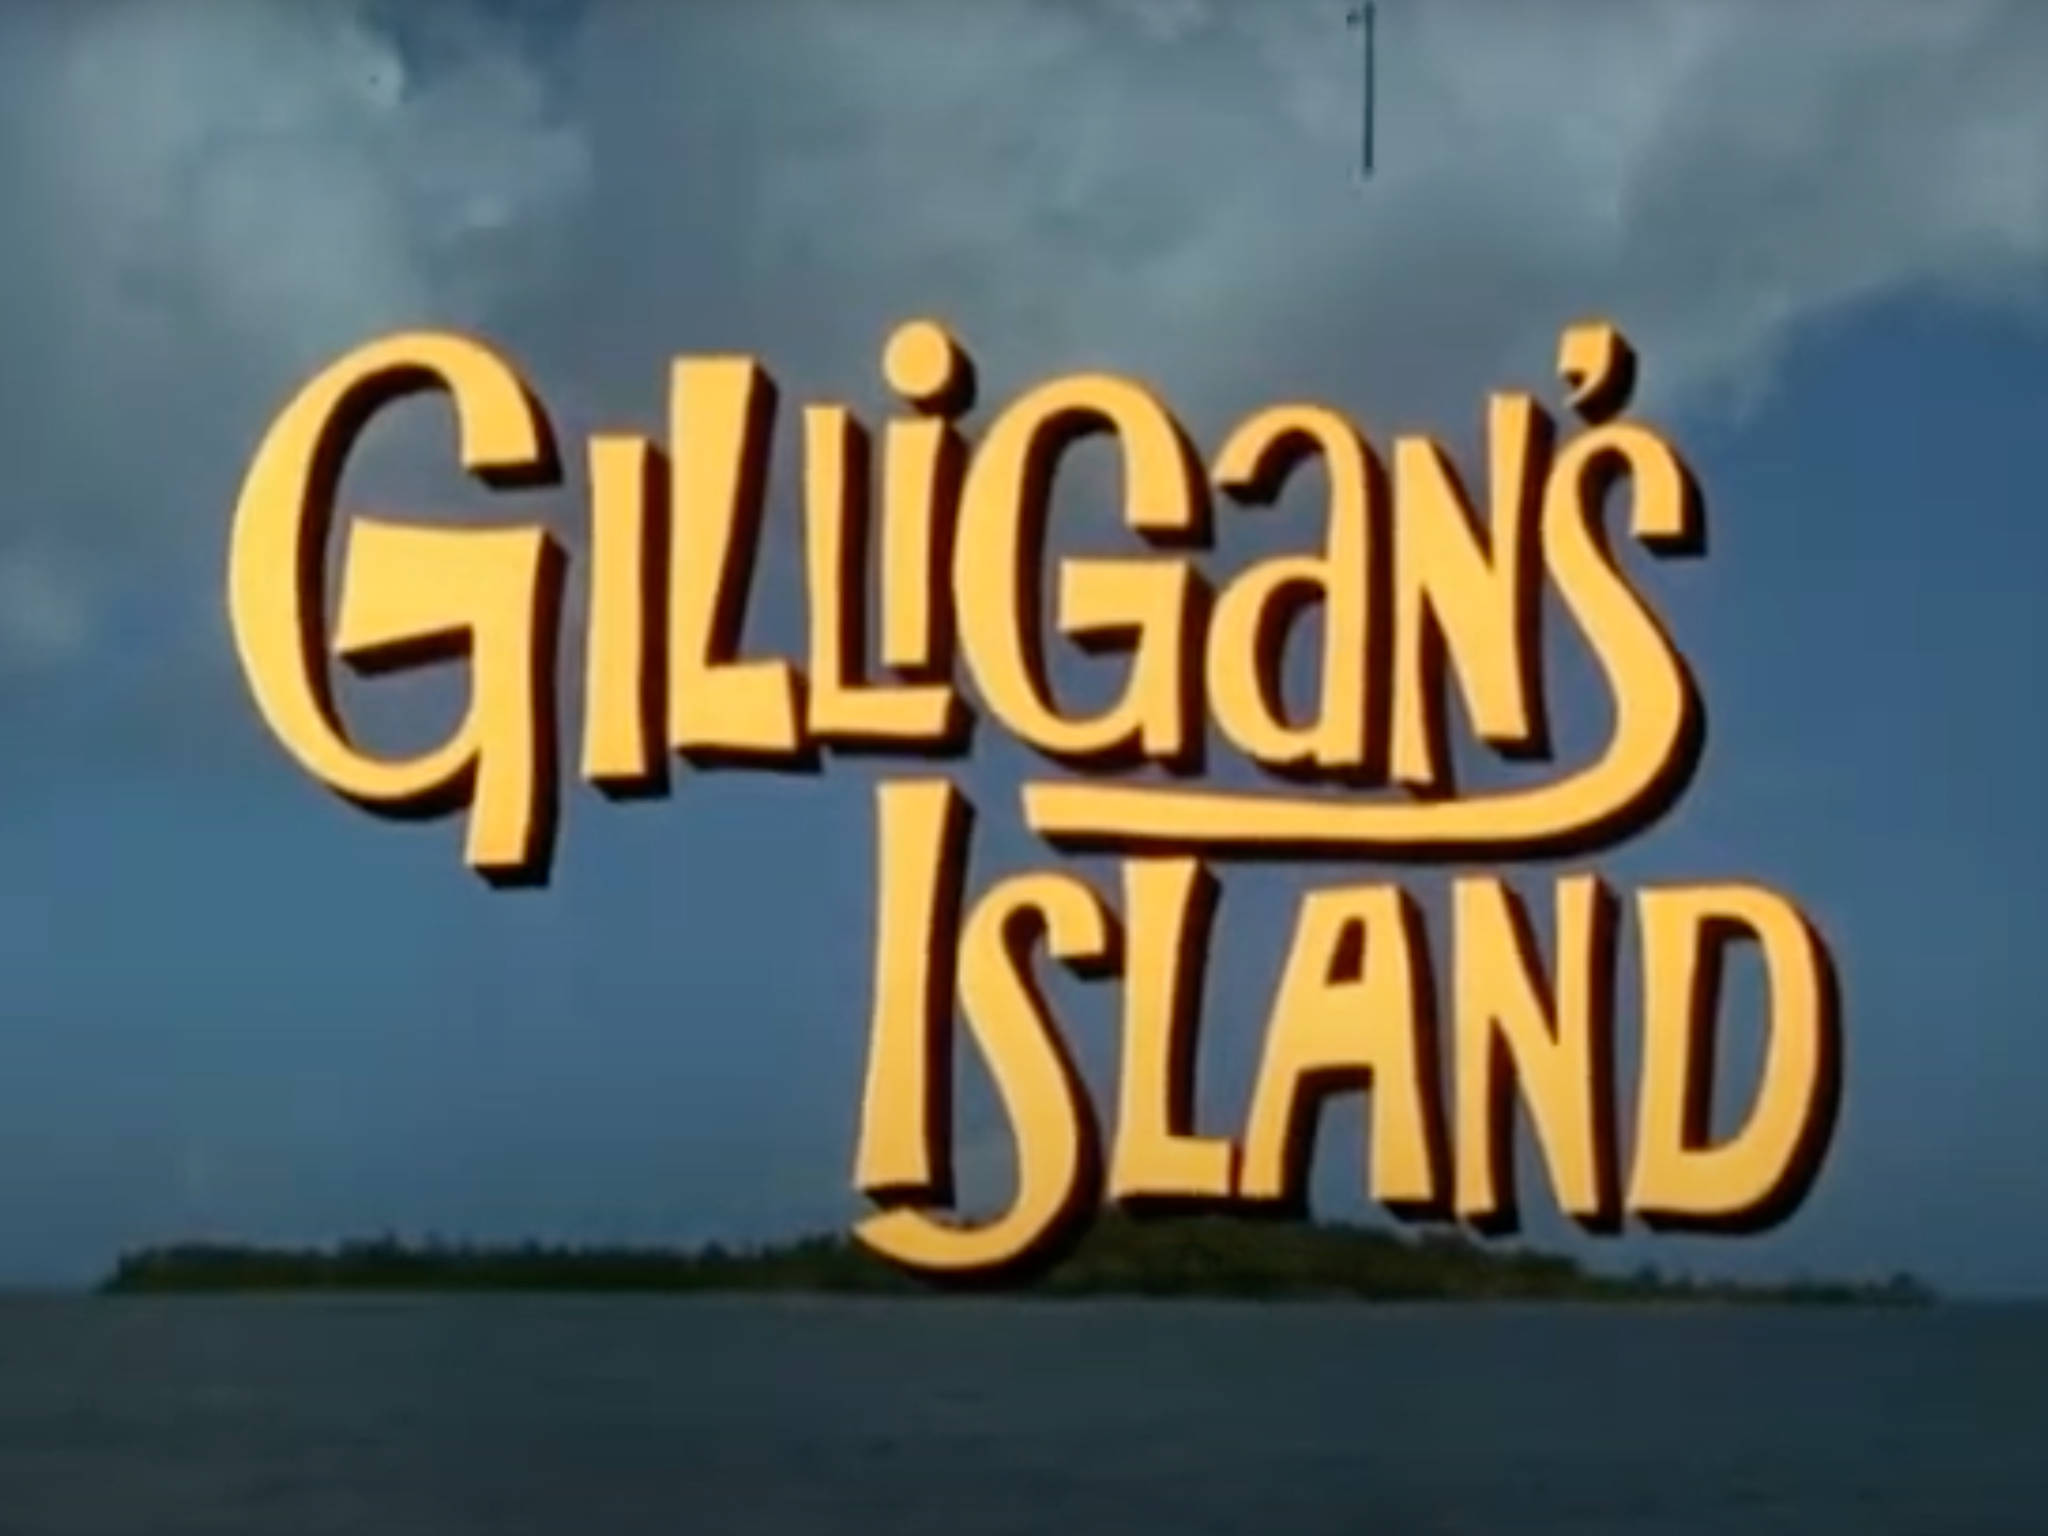 Canciones
de rap, melodías pop y, lo que es más peculiar, el tema principal de la comedia
de 1964 Gilligan's Island se encuentran entre las pistas de las que se acusa a
Gross de tocar.